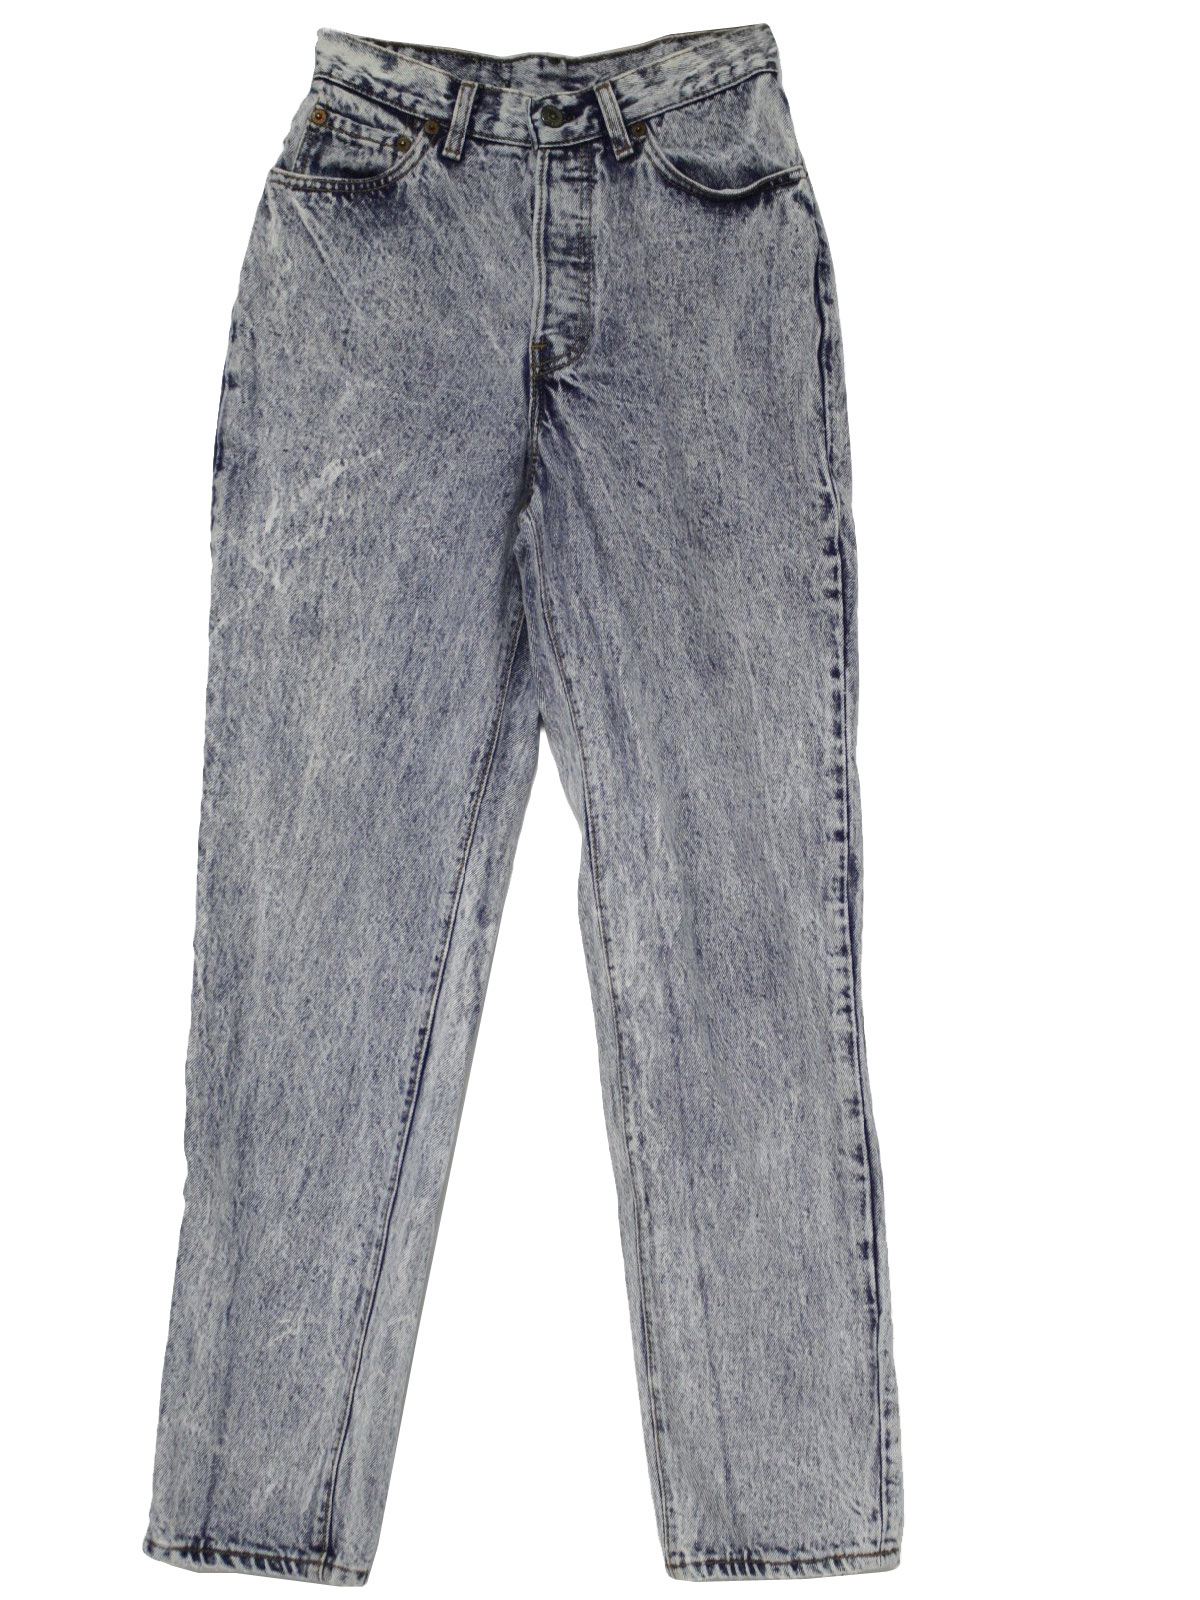 Retro 80s Pants (Levis) : 80s -Levis- Womens light blue acid wash jeans ...